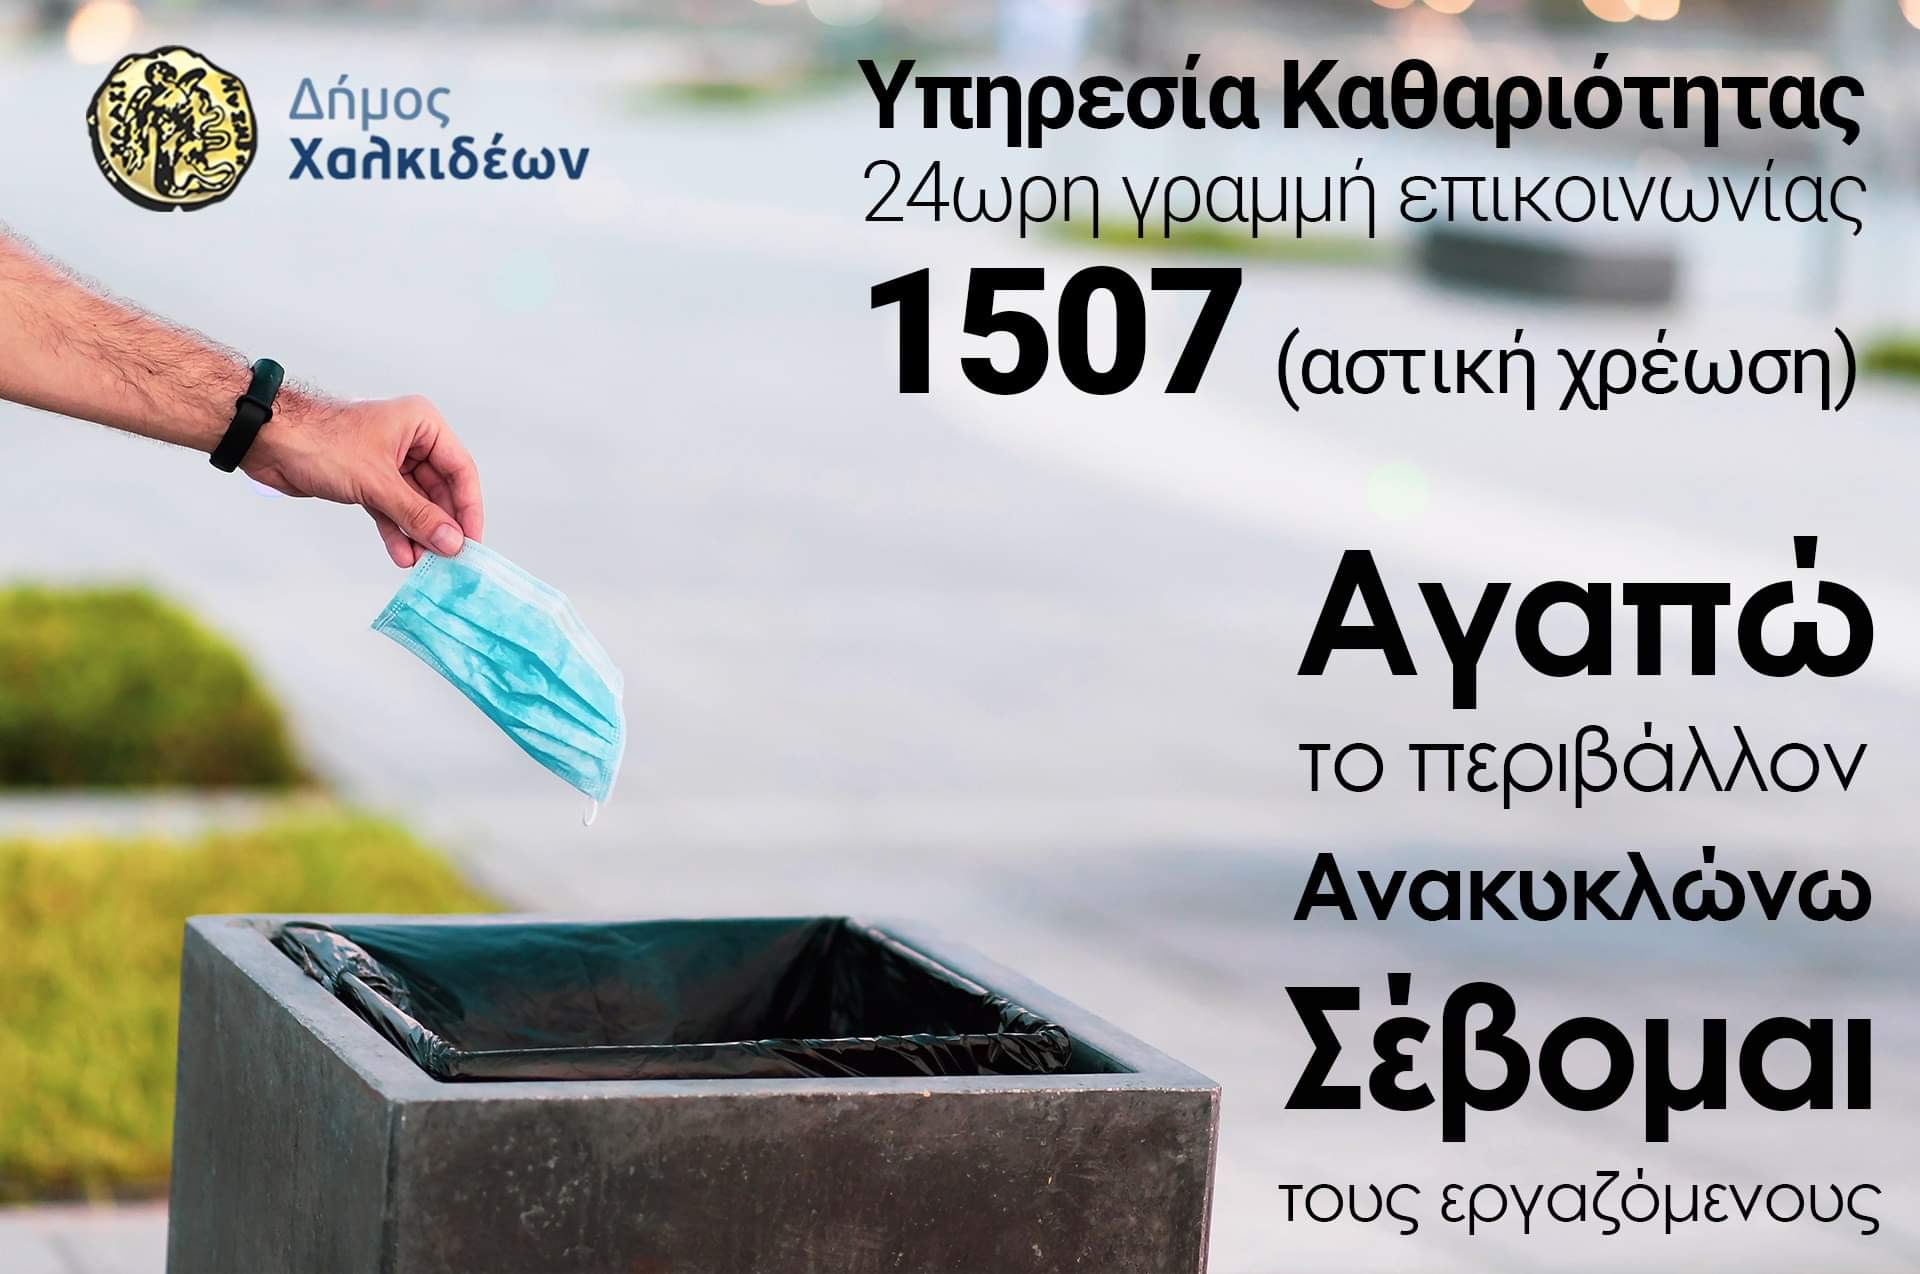 1507: Η νέα 24ωρη γραμμή επικοινωνίας με την Υπηρεσία Καθαριότητας του Δήμου Χαλκιδέων | e-sterea.gr